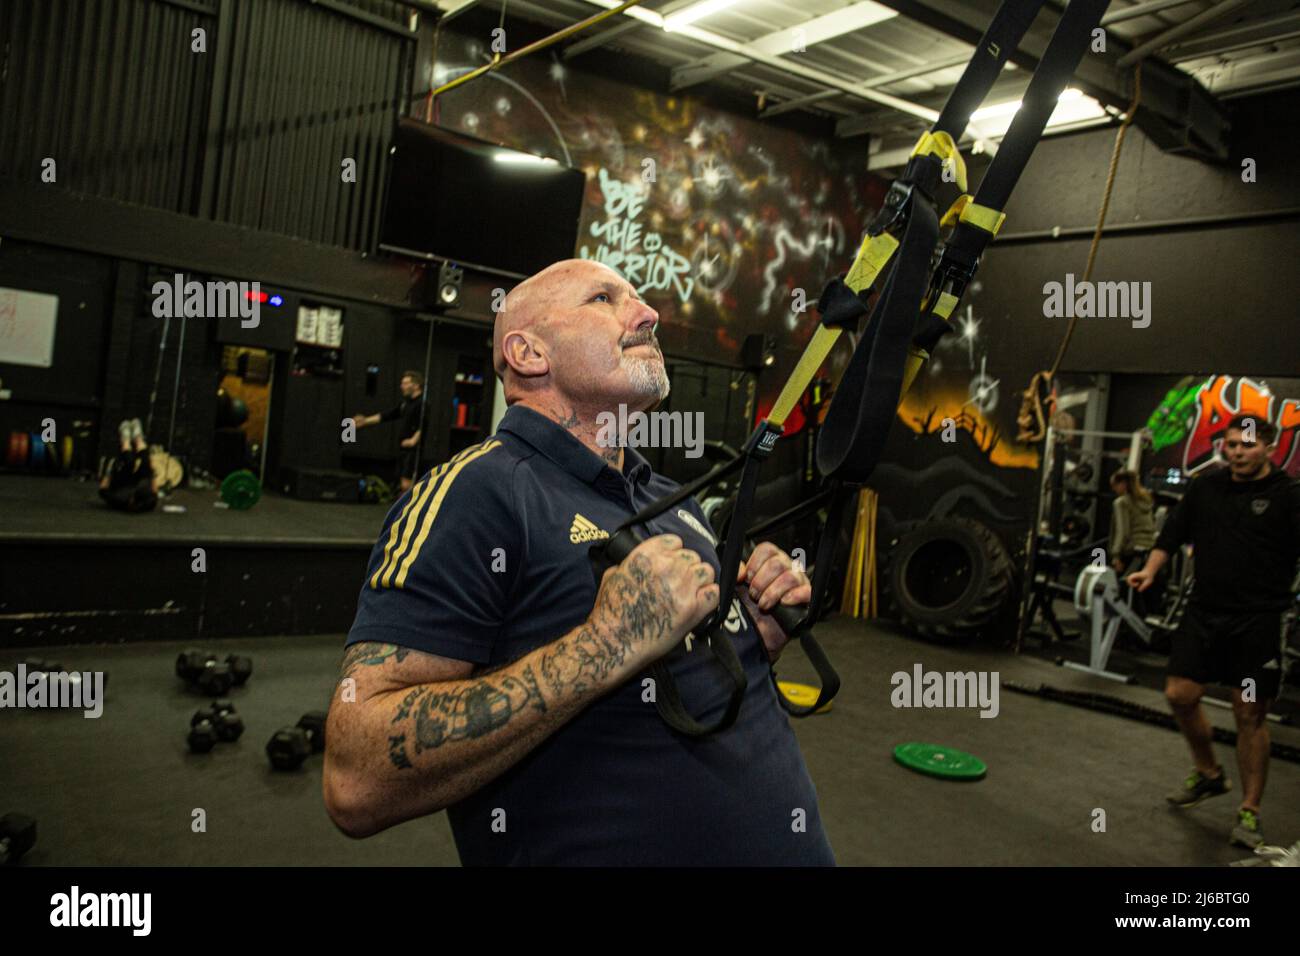 Homme s'exerçant avec des cordes élastiques dans la salle de gym , West Yorkshire, Angleterre. Banque D'Images